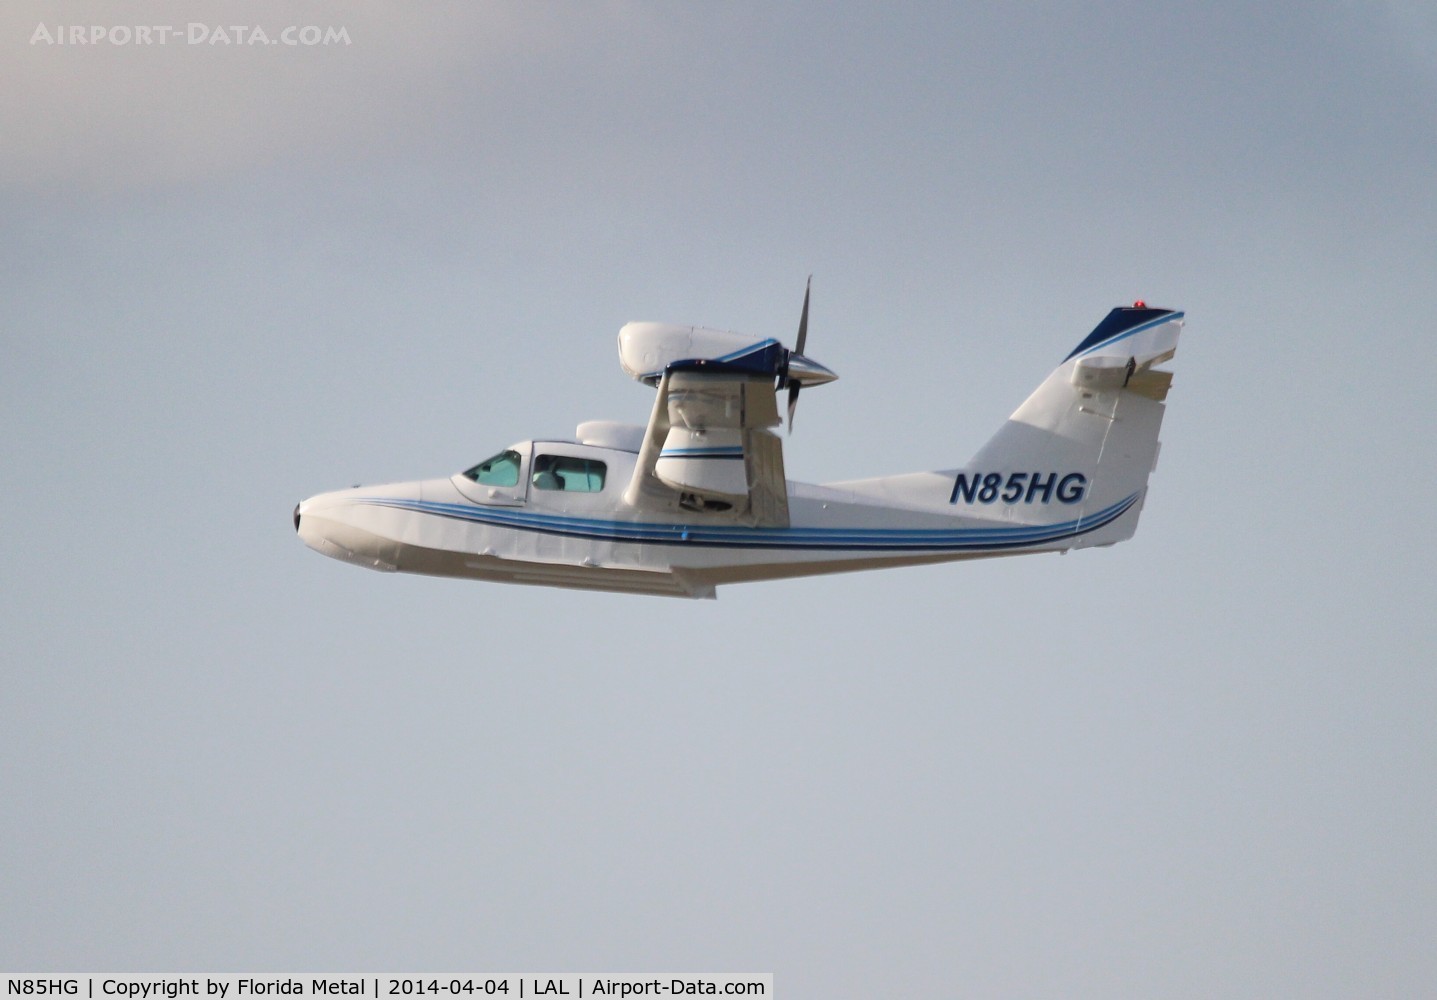 N85HG, 1988 Aerofab Inc LAKE LA-250 C/N 81, Lake 250